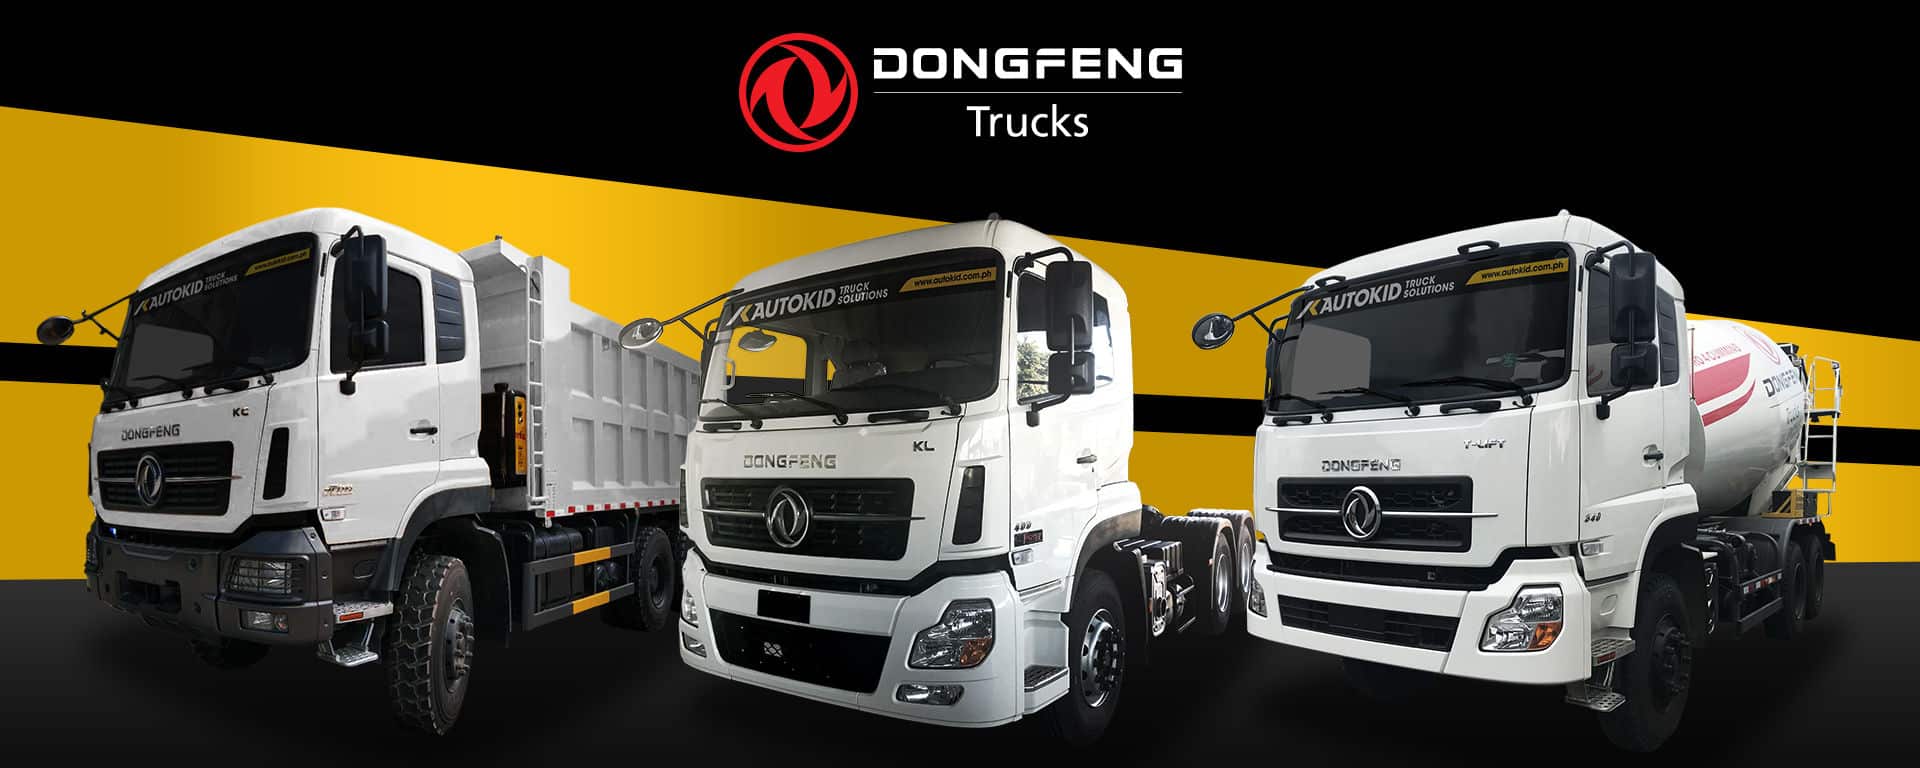 Dongfeng nổi tiếng với những mẫu xe tải hạng nặng